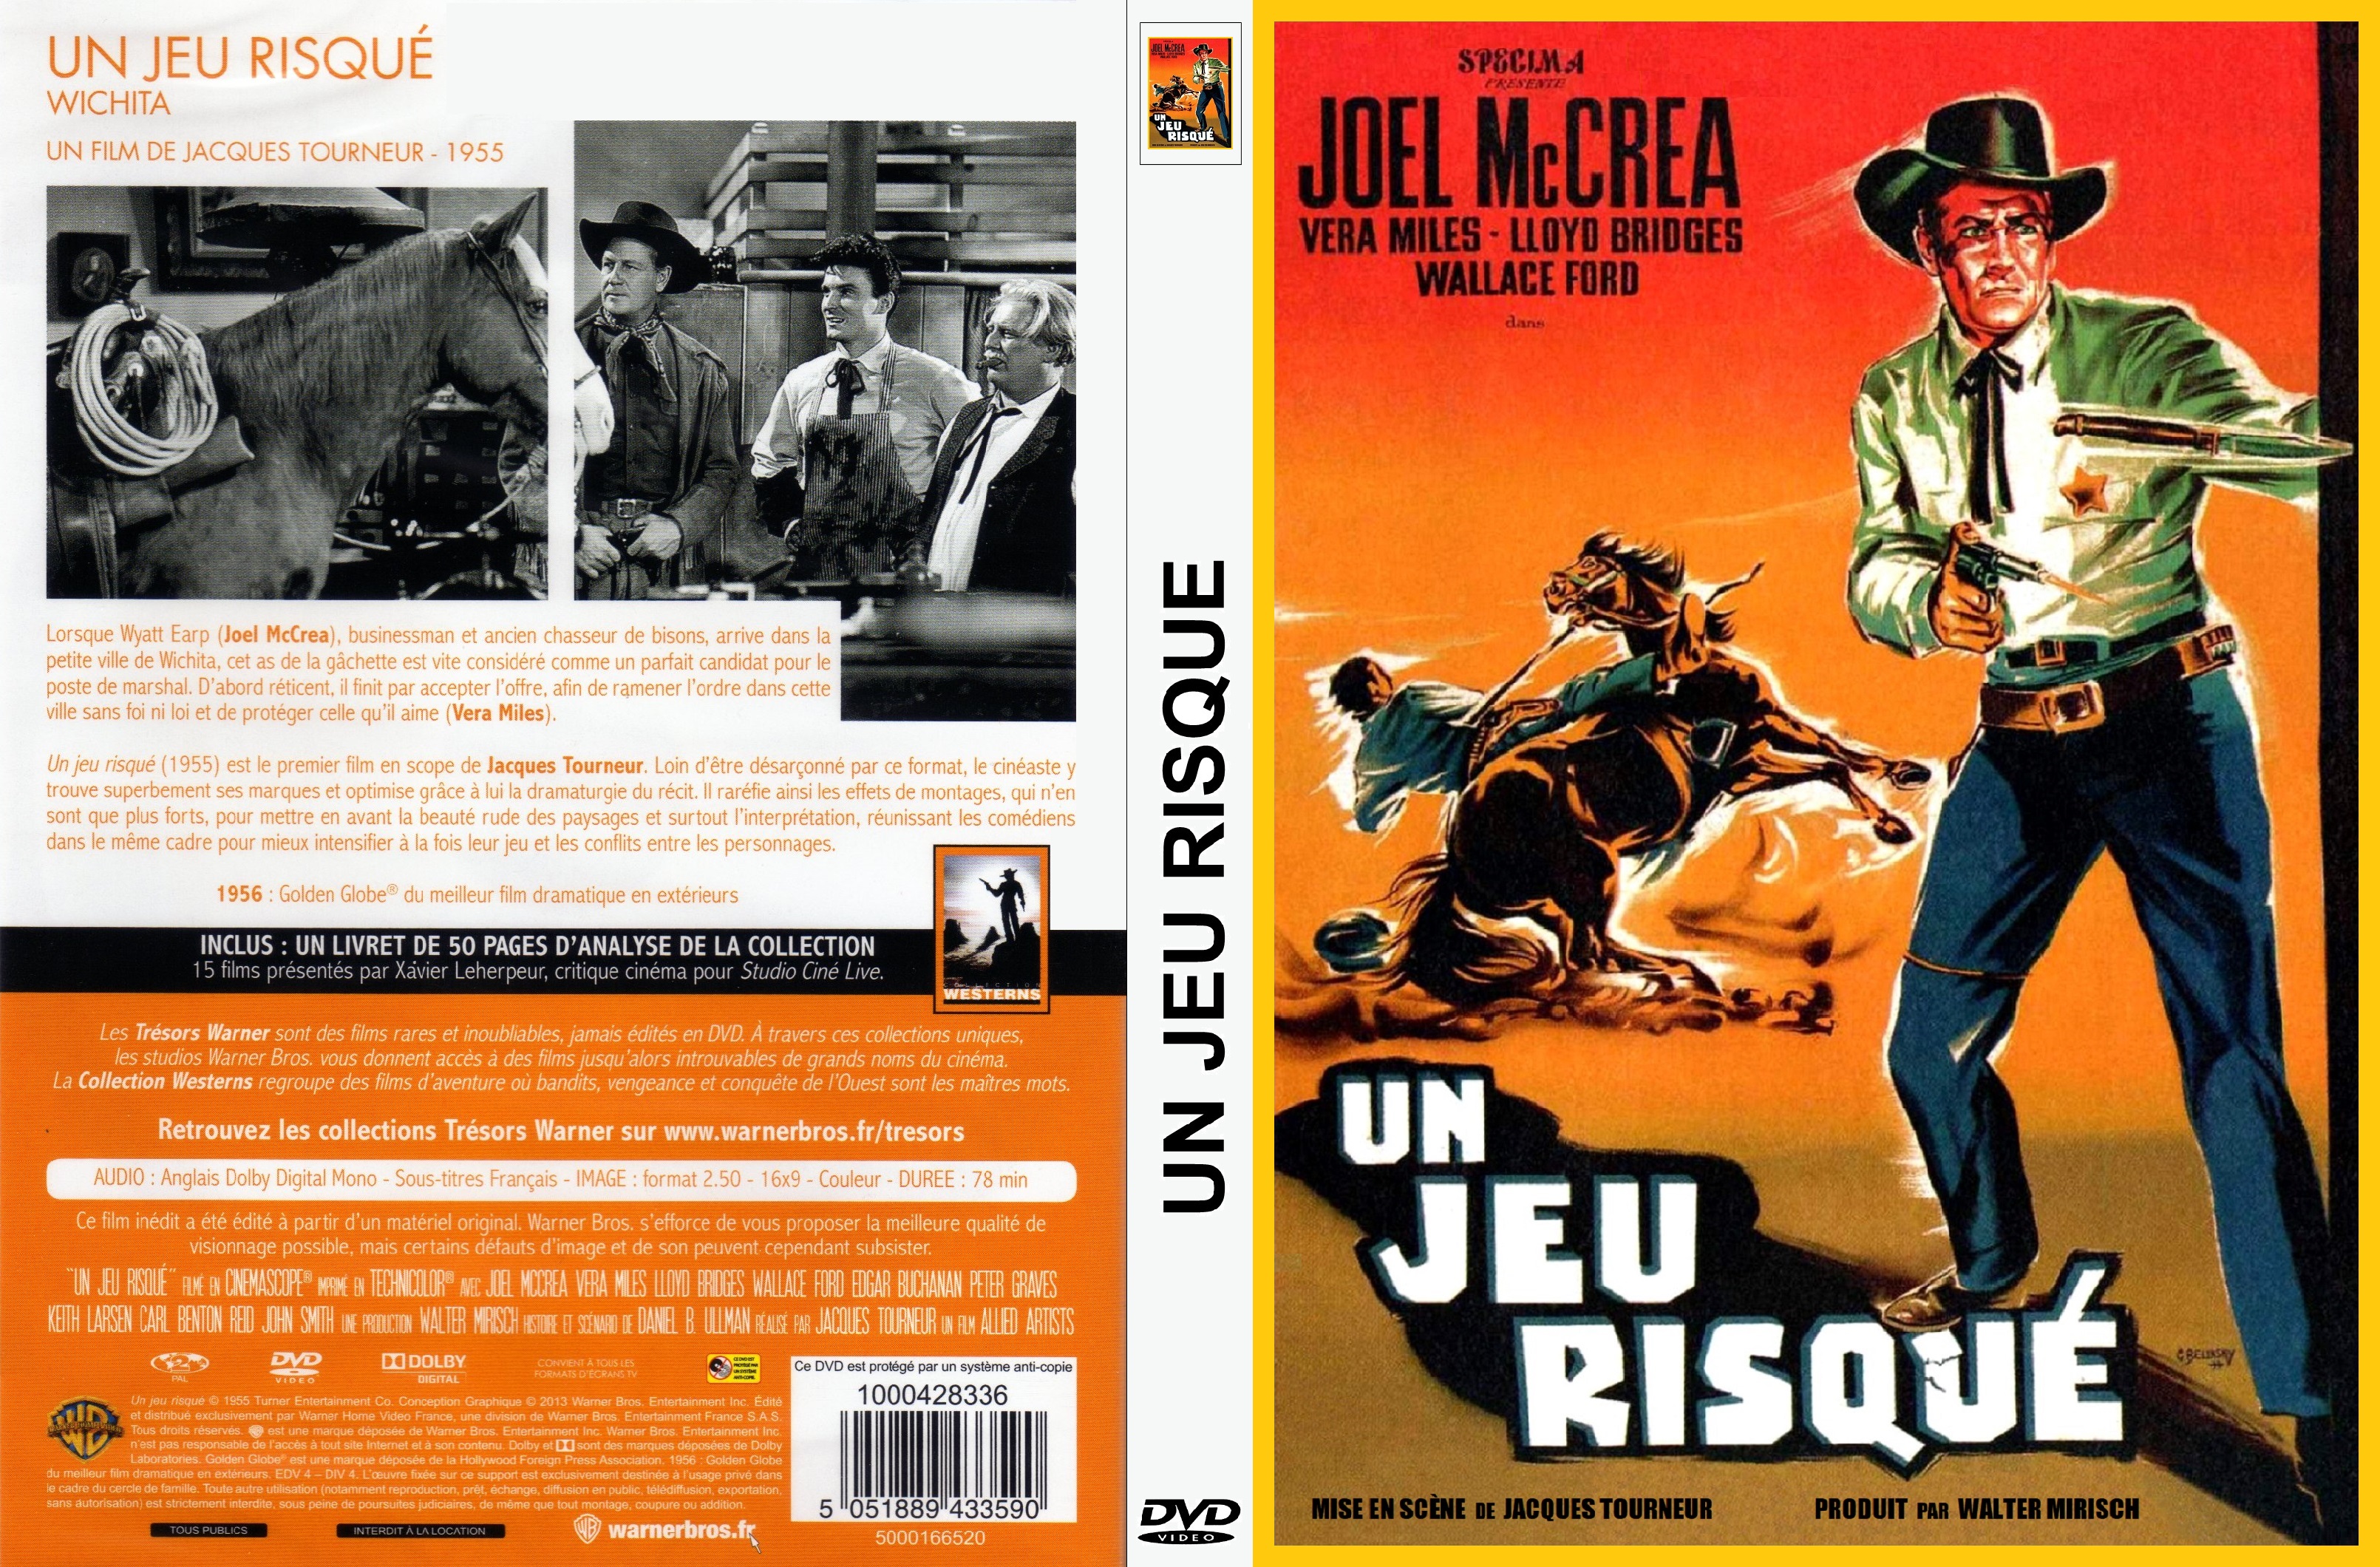 Jaquette DVD Un Jeu risqu custom